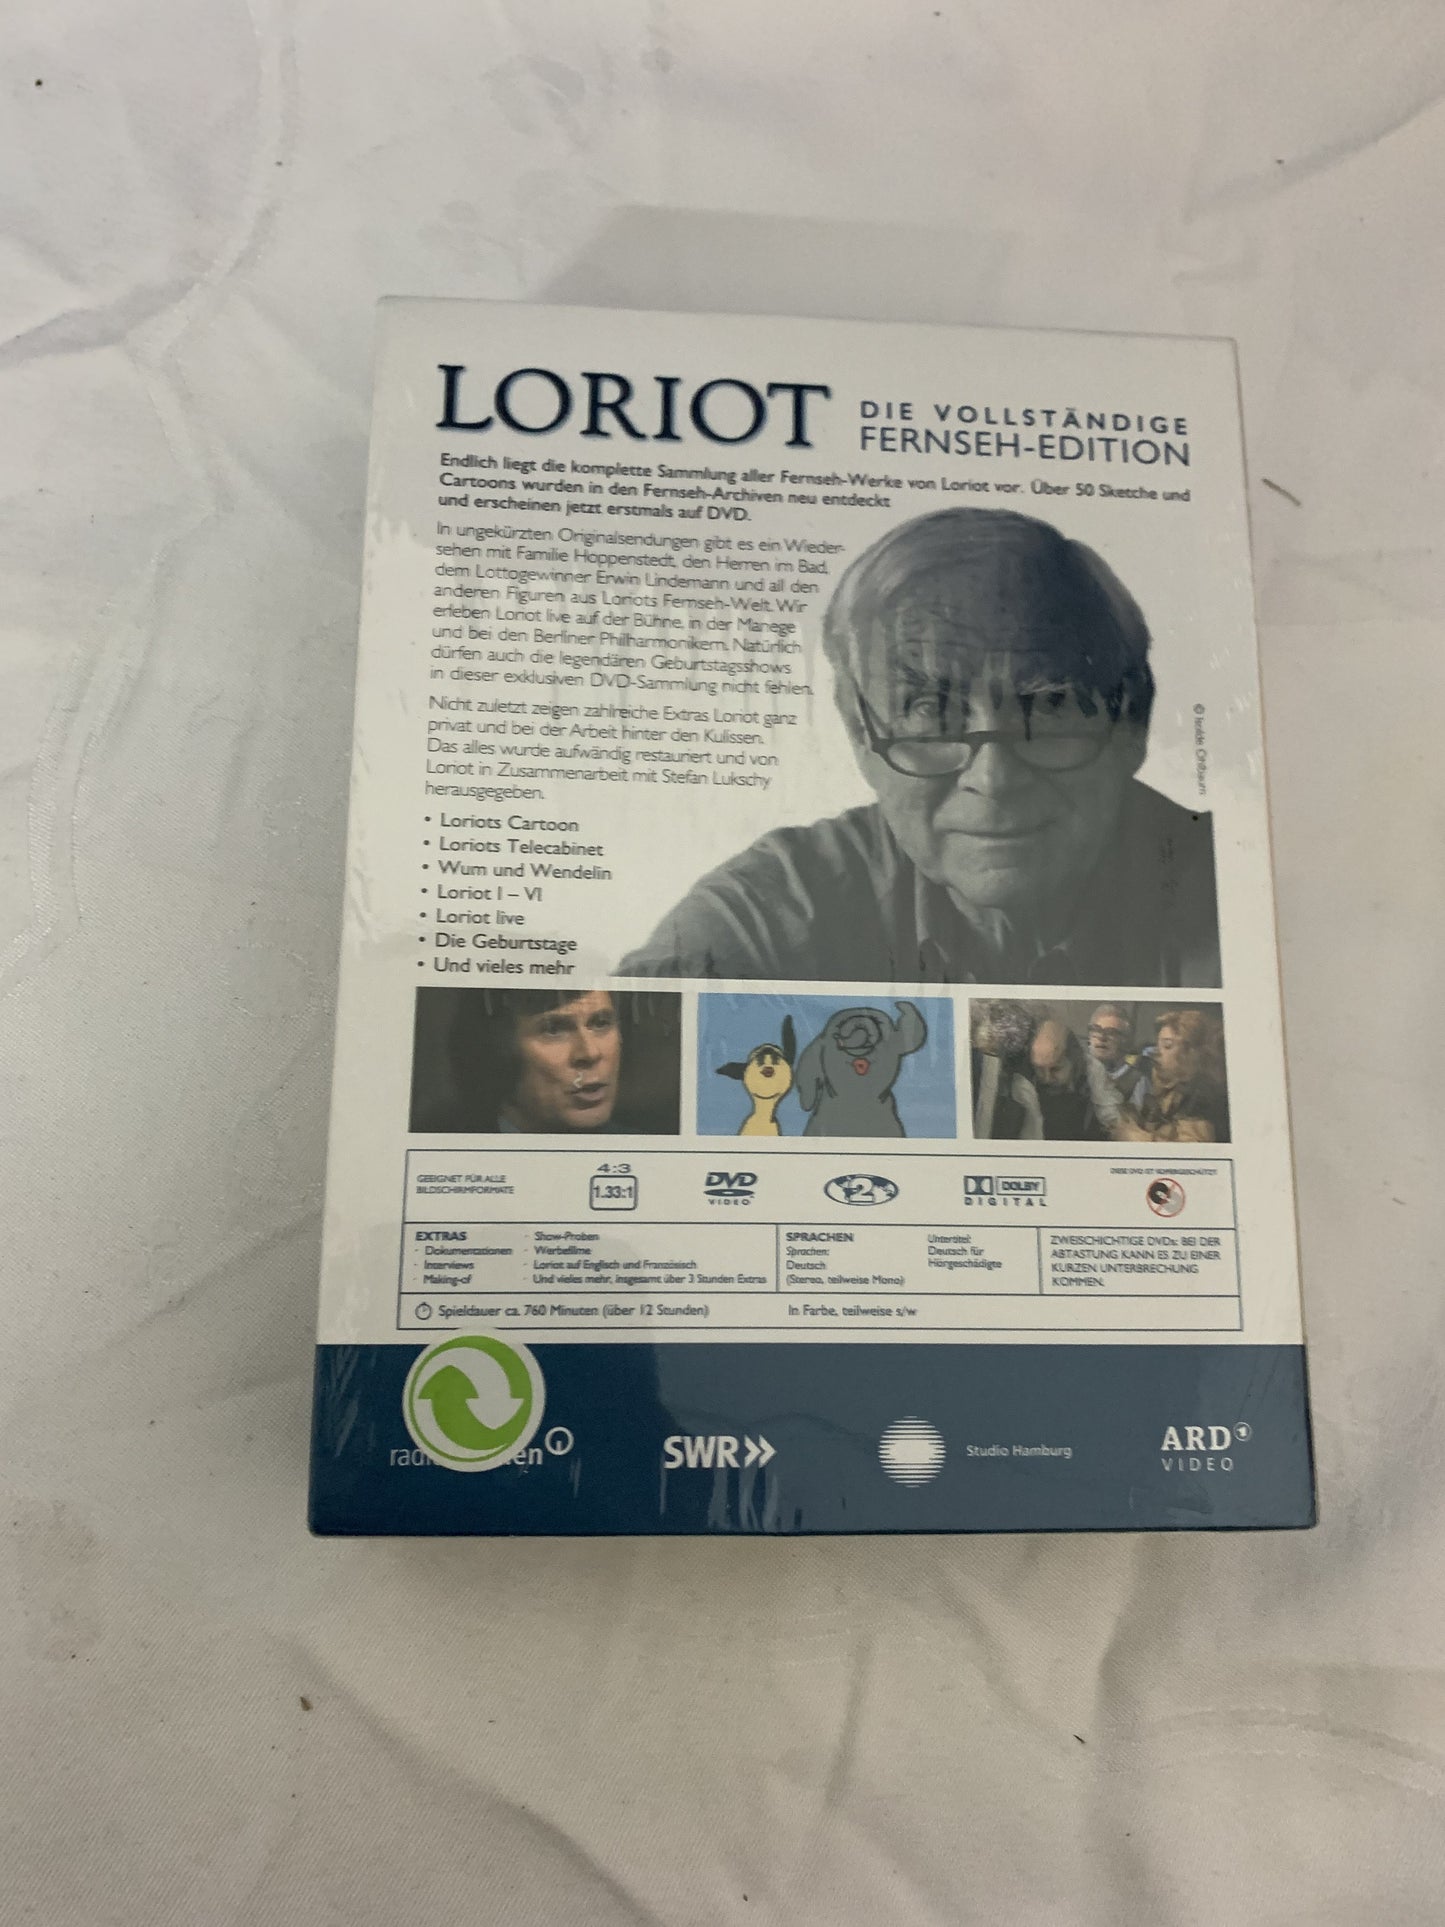 Loriot - Die vollständige Fernseh-Edition, 6 DVDs